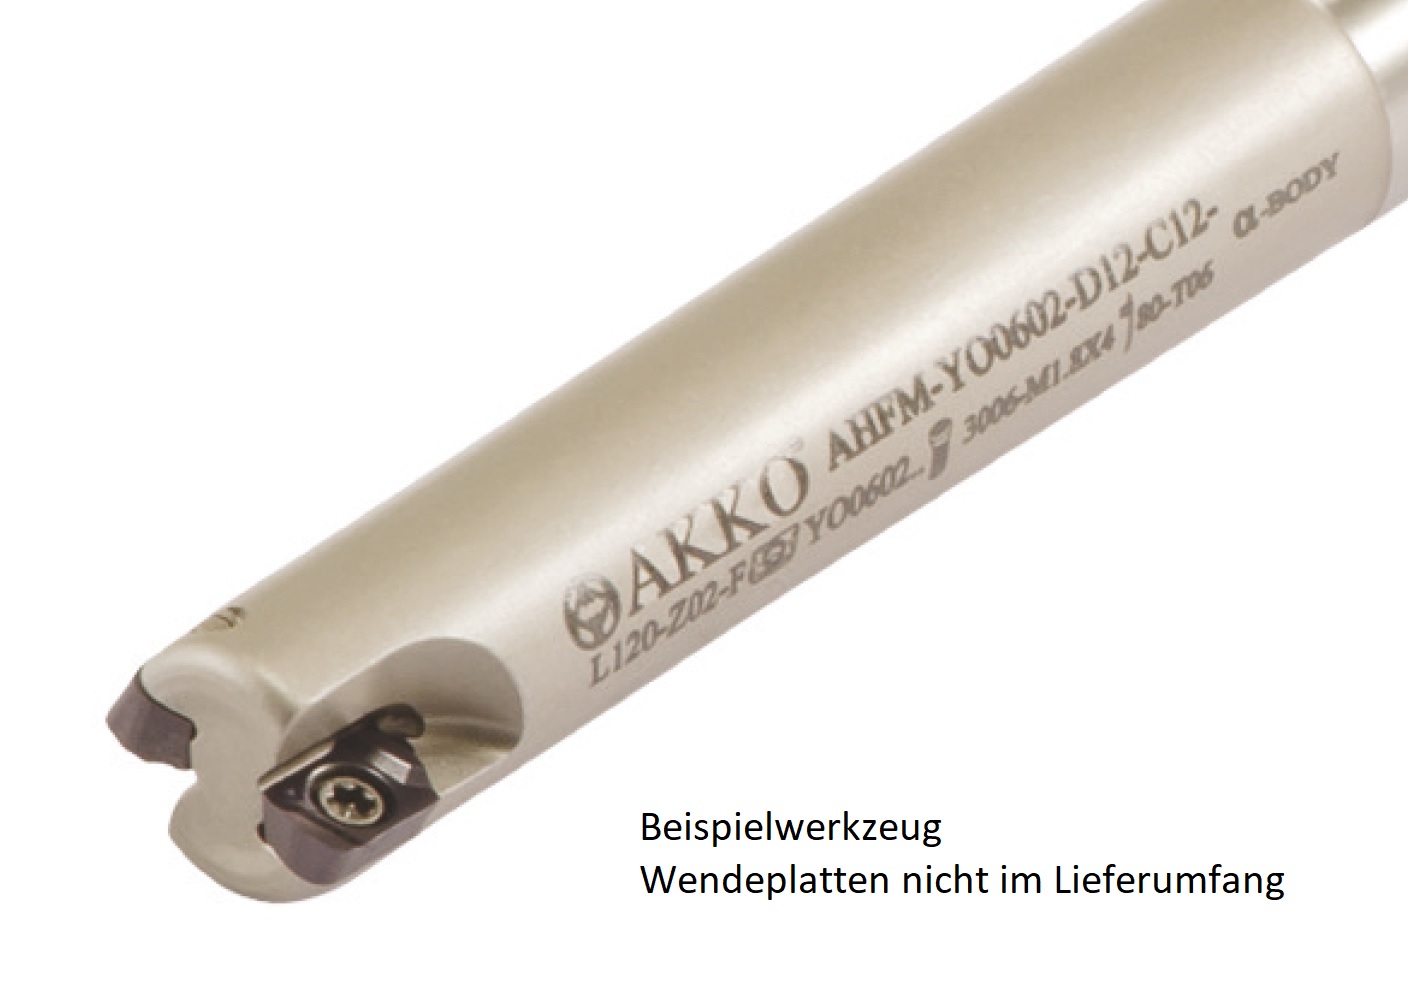 AKKO-Hochvorschub-Schaftfräser ø 12 mm für Wendeplatten, kompatibel mit Dijet YOHW 0602....
Schaft-ø 12, ohne Innenkühlung, Z=2, Durchmessertoleranz +/- 0,02 mm